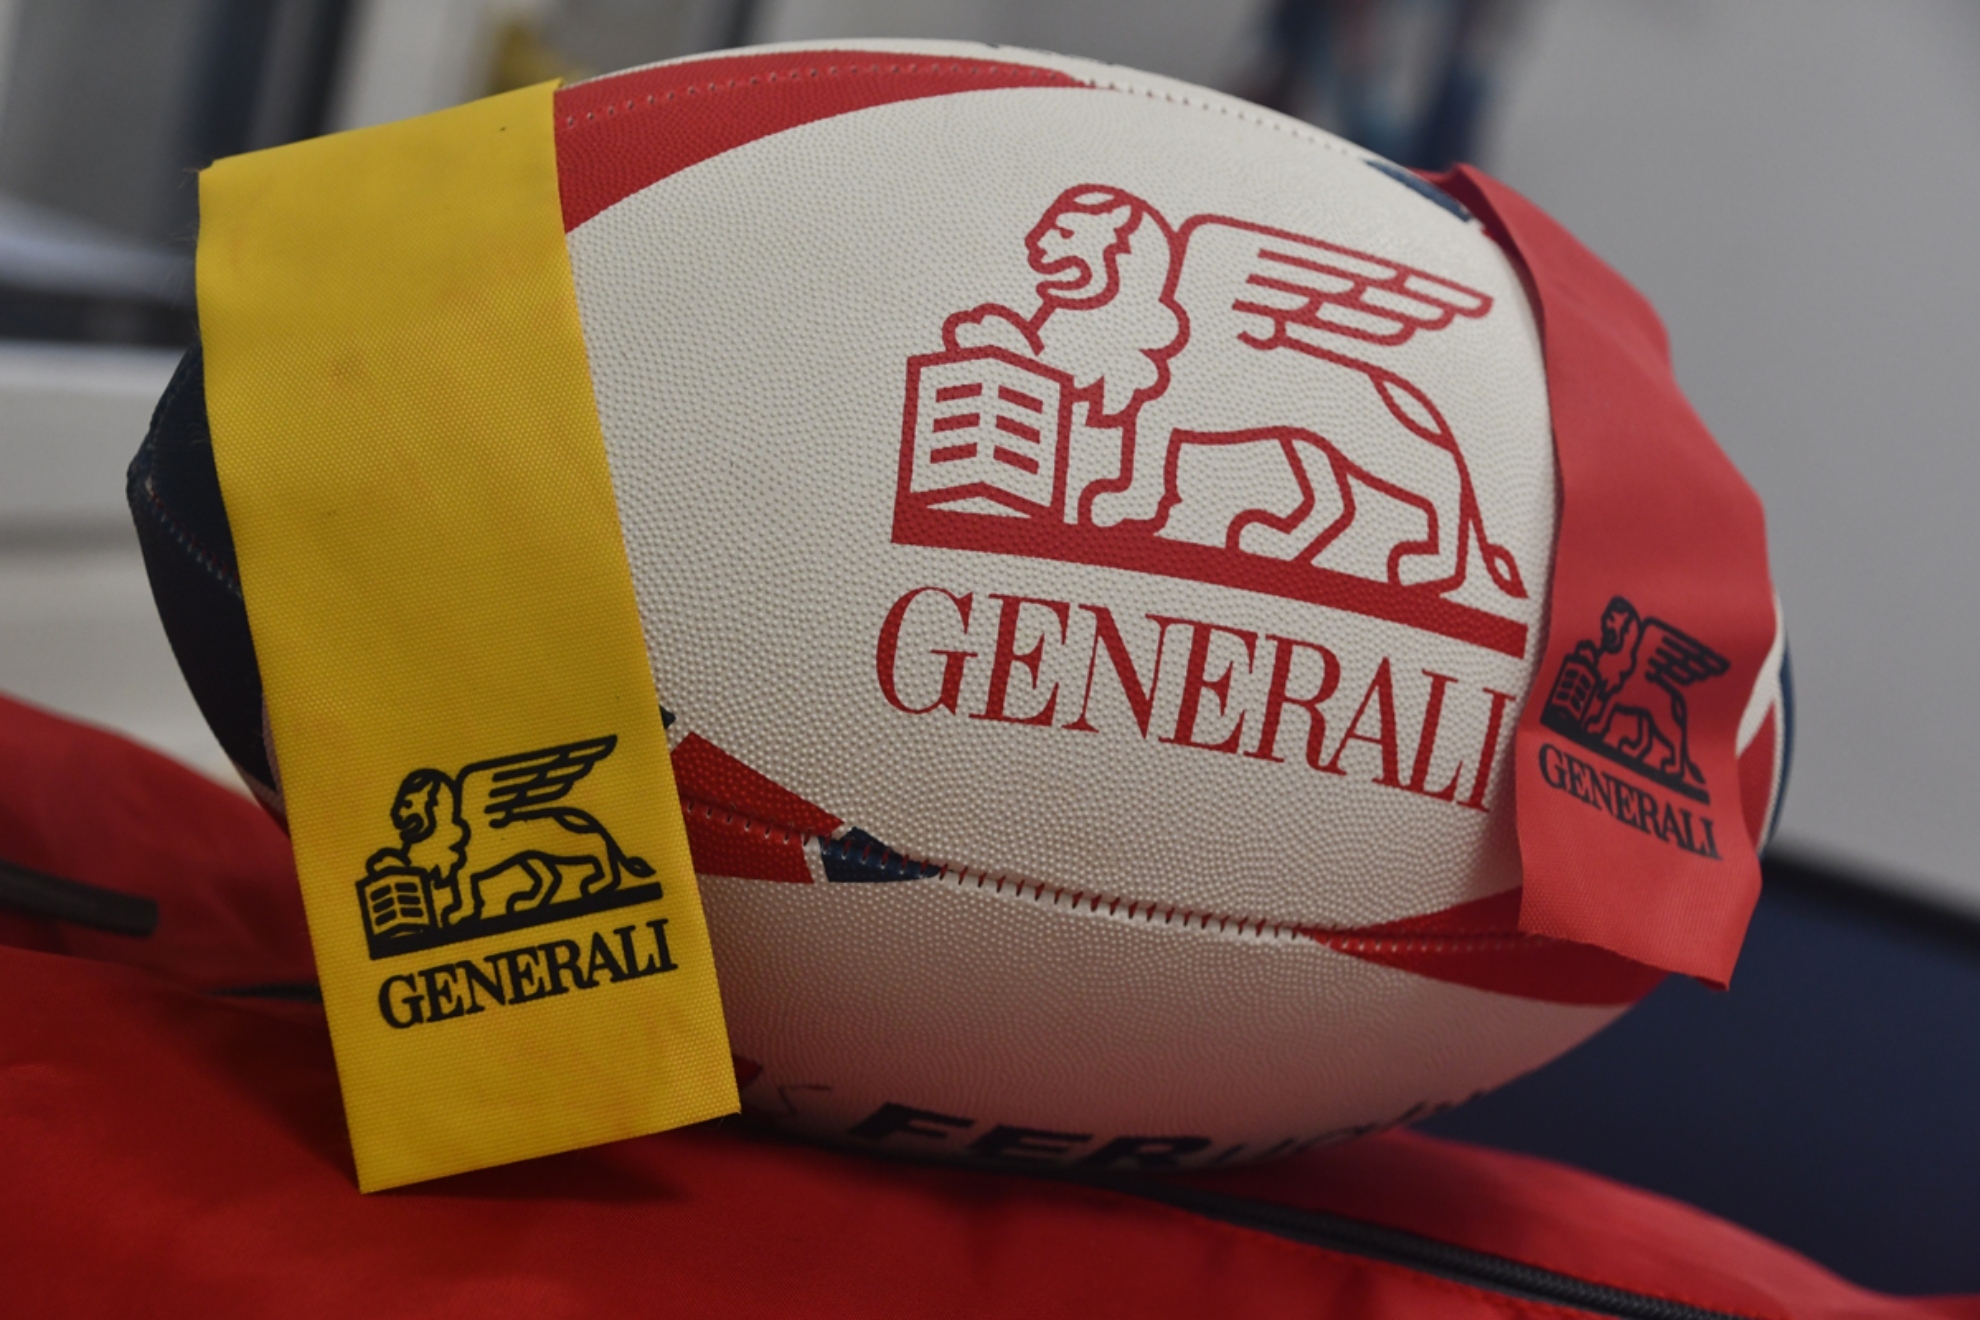 Generali y la RFER lanzan el IV Get into rugby para superar los 800 colegios